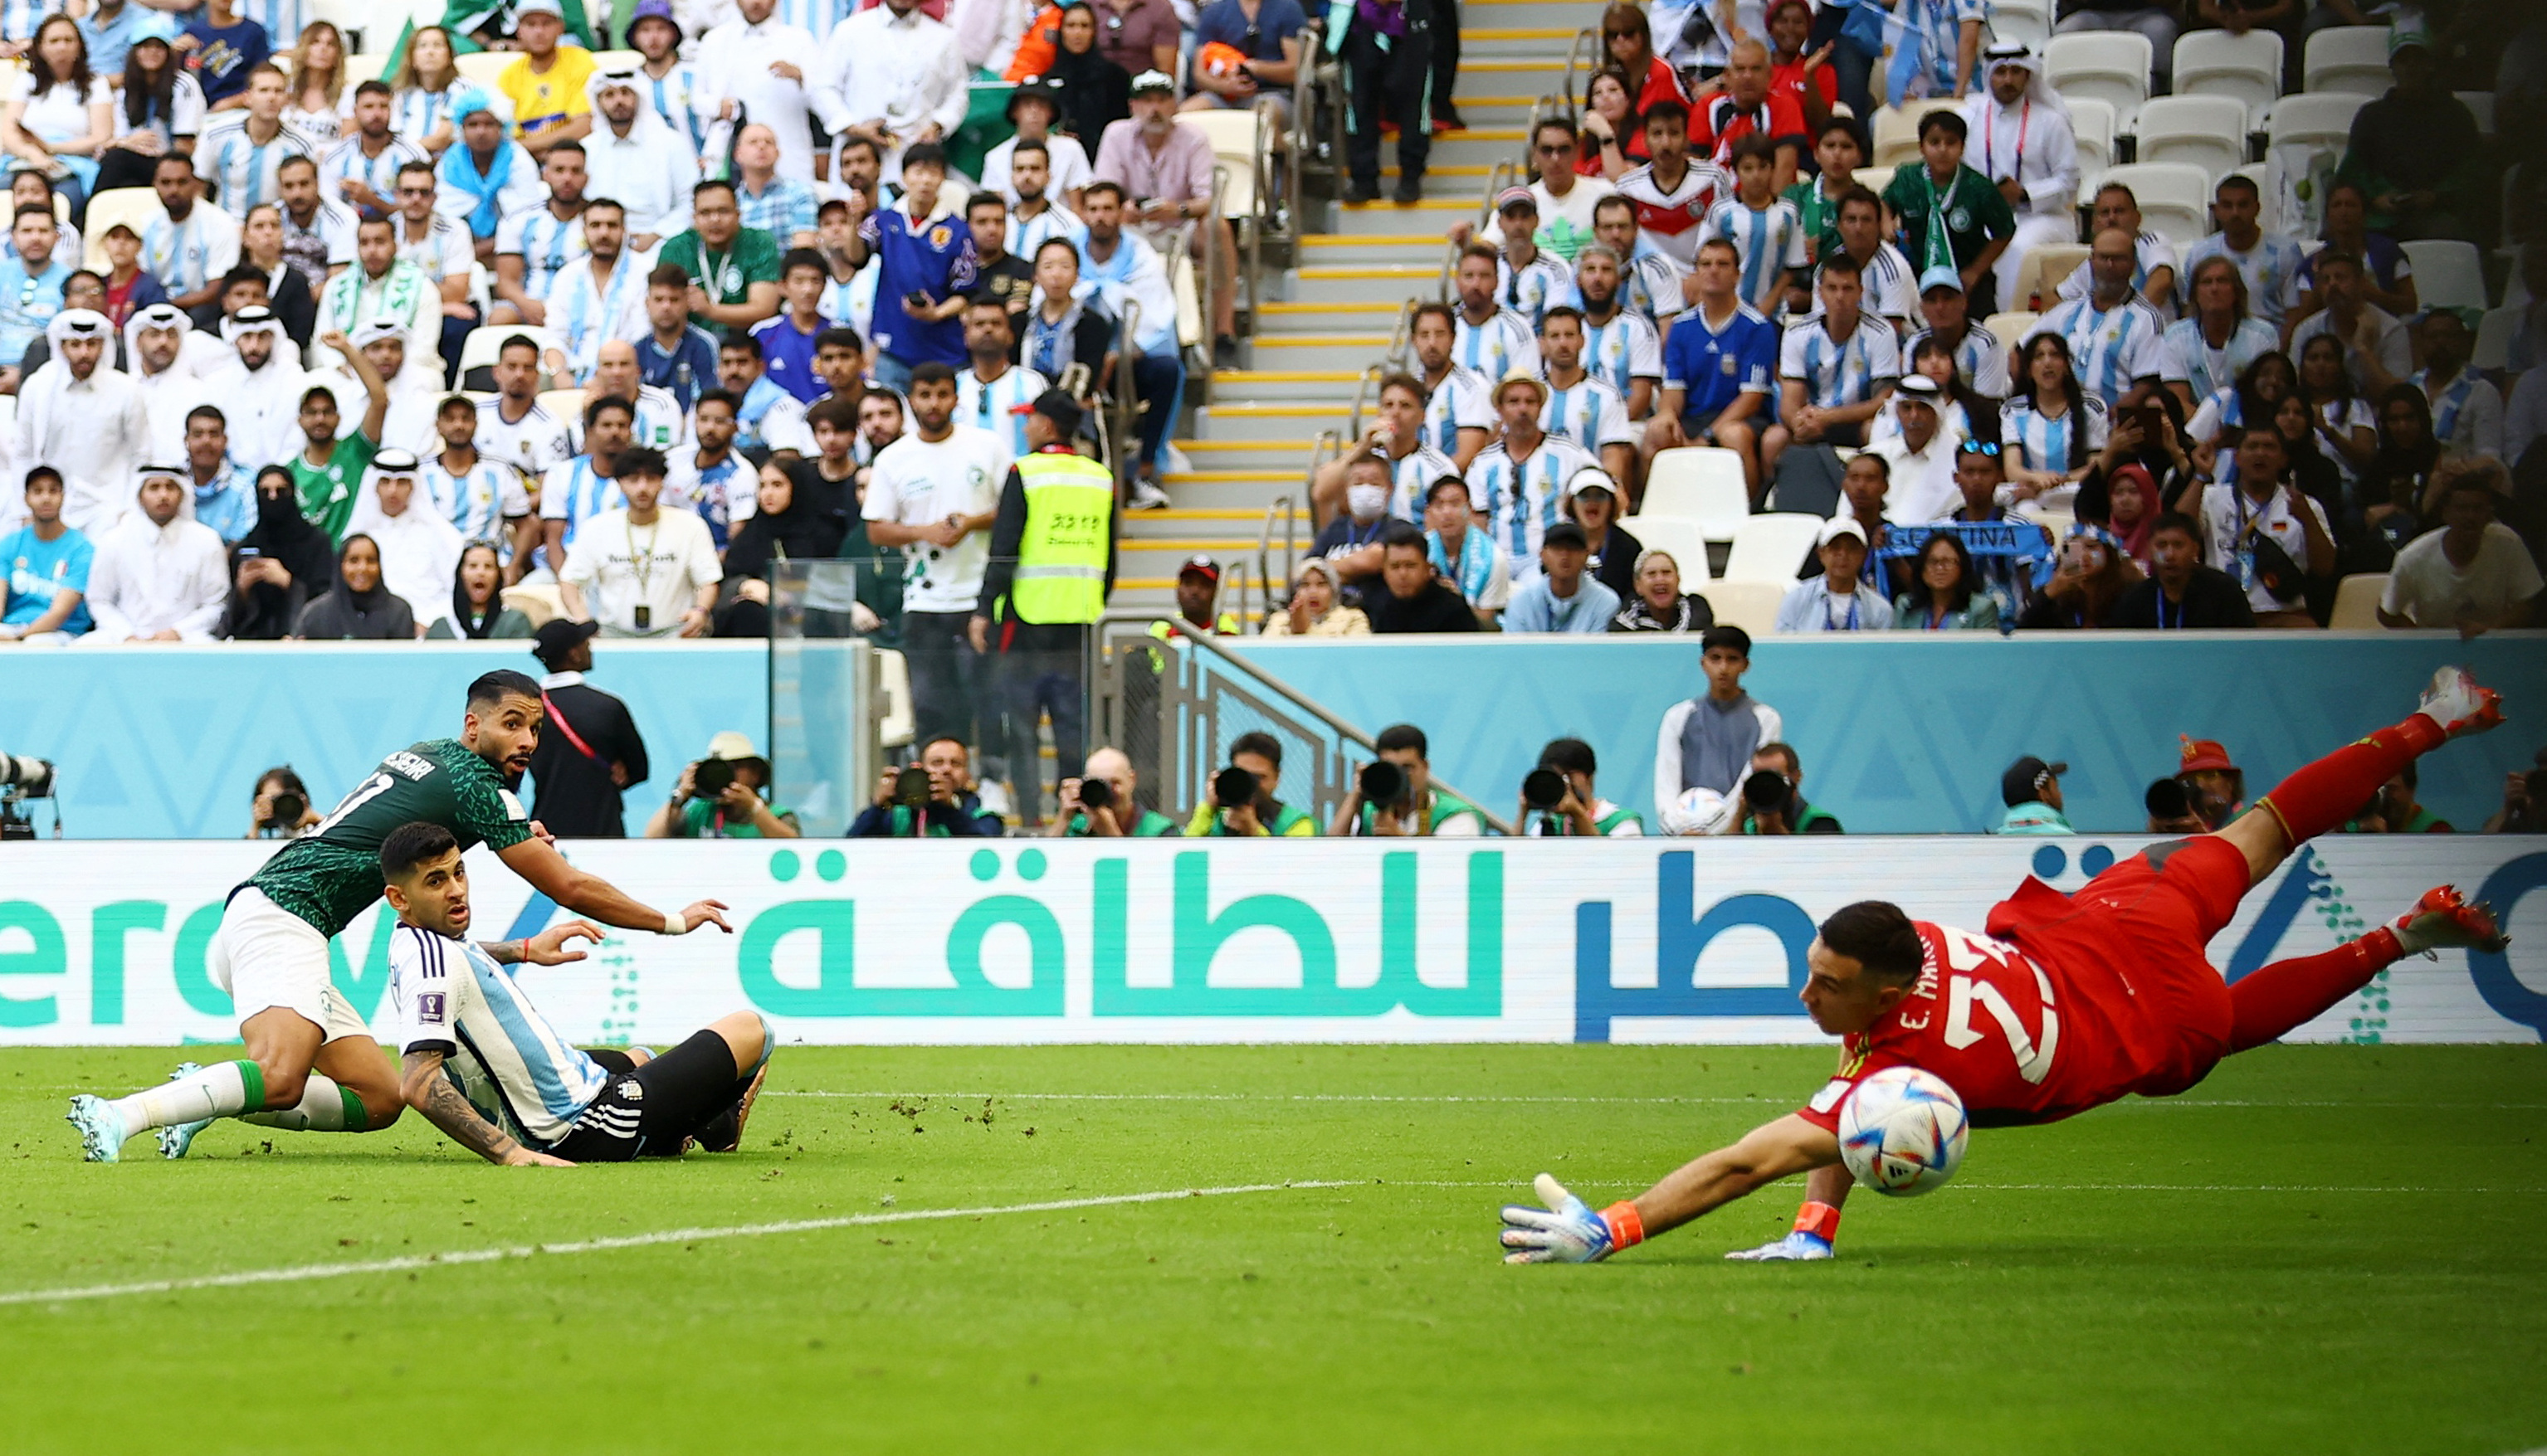 Arabia igualó en los primeros minutos de la segunda etapa (REUTERS/Hannah Mckay)